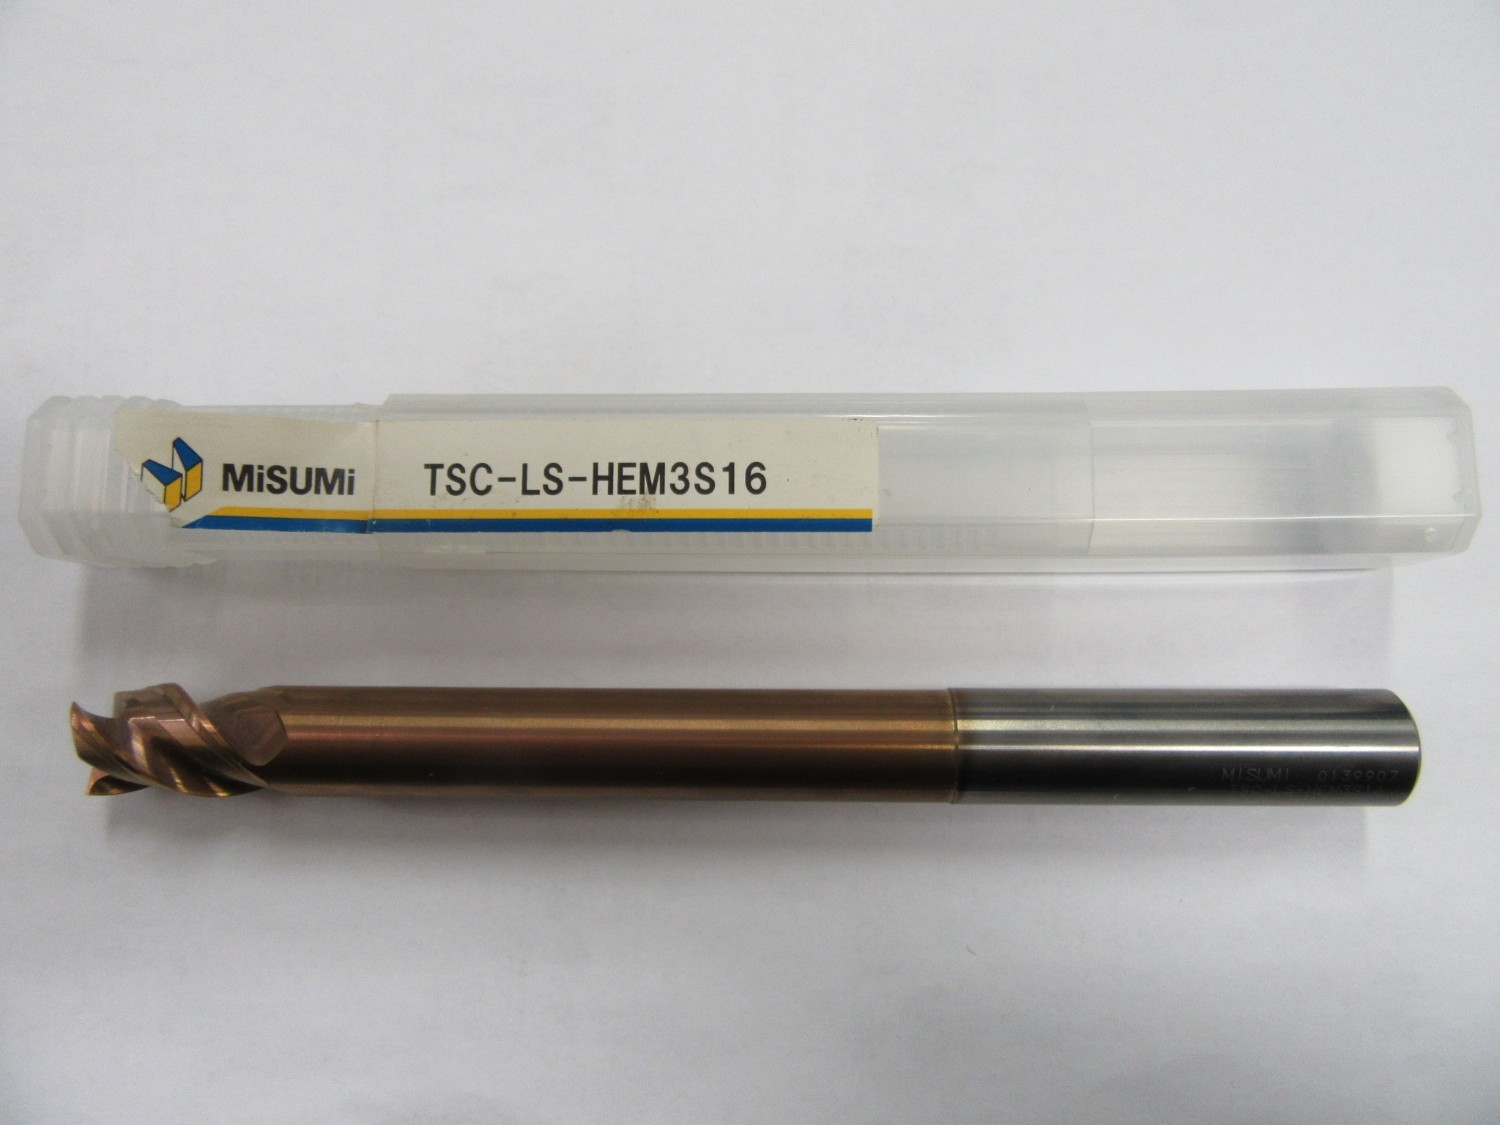 中古その他エンドミル TSCシリーズ超硬多機能スクエアエンドミル TSC-LS-HEM3S16  ミスミ